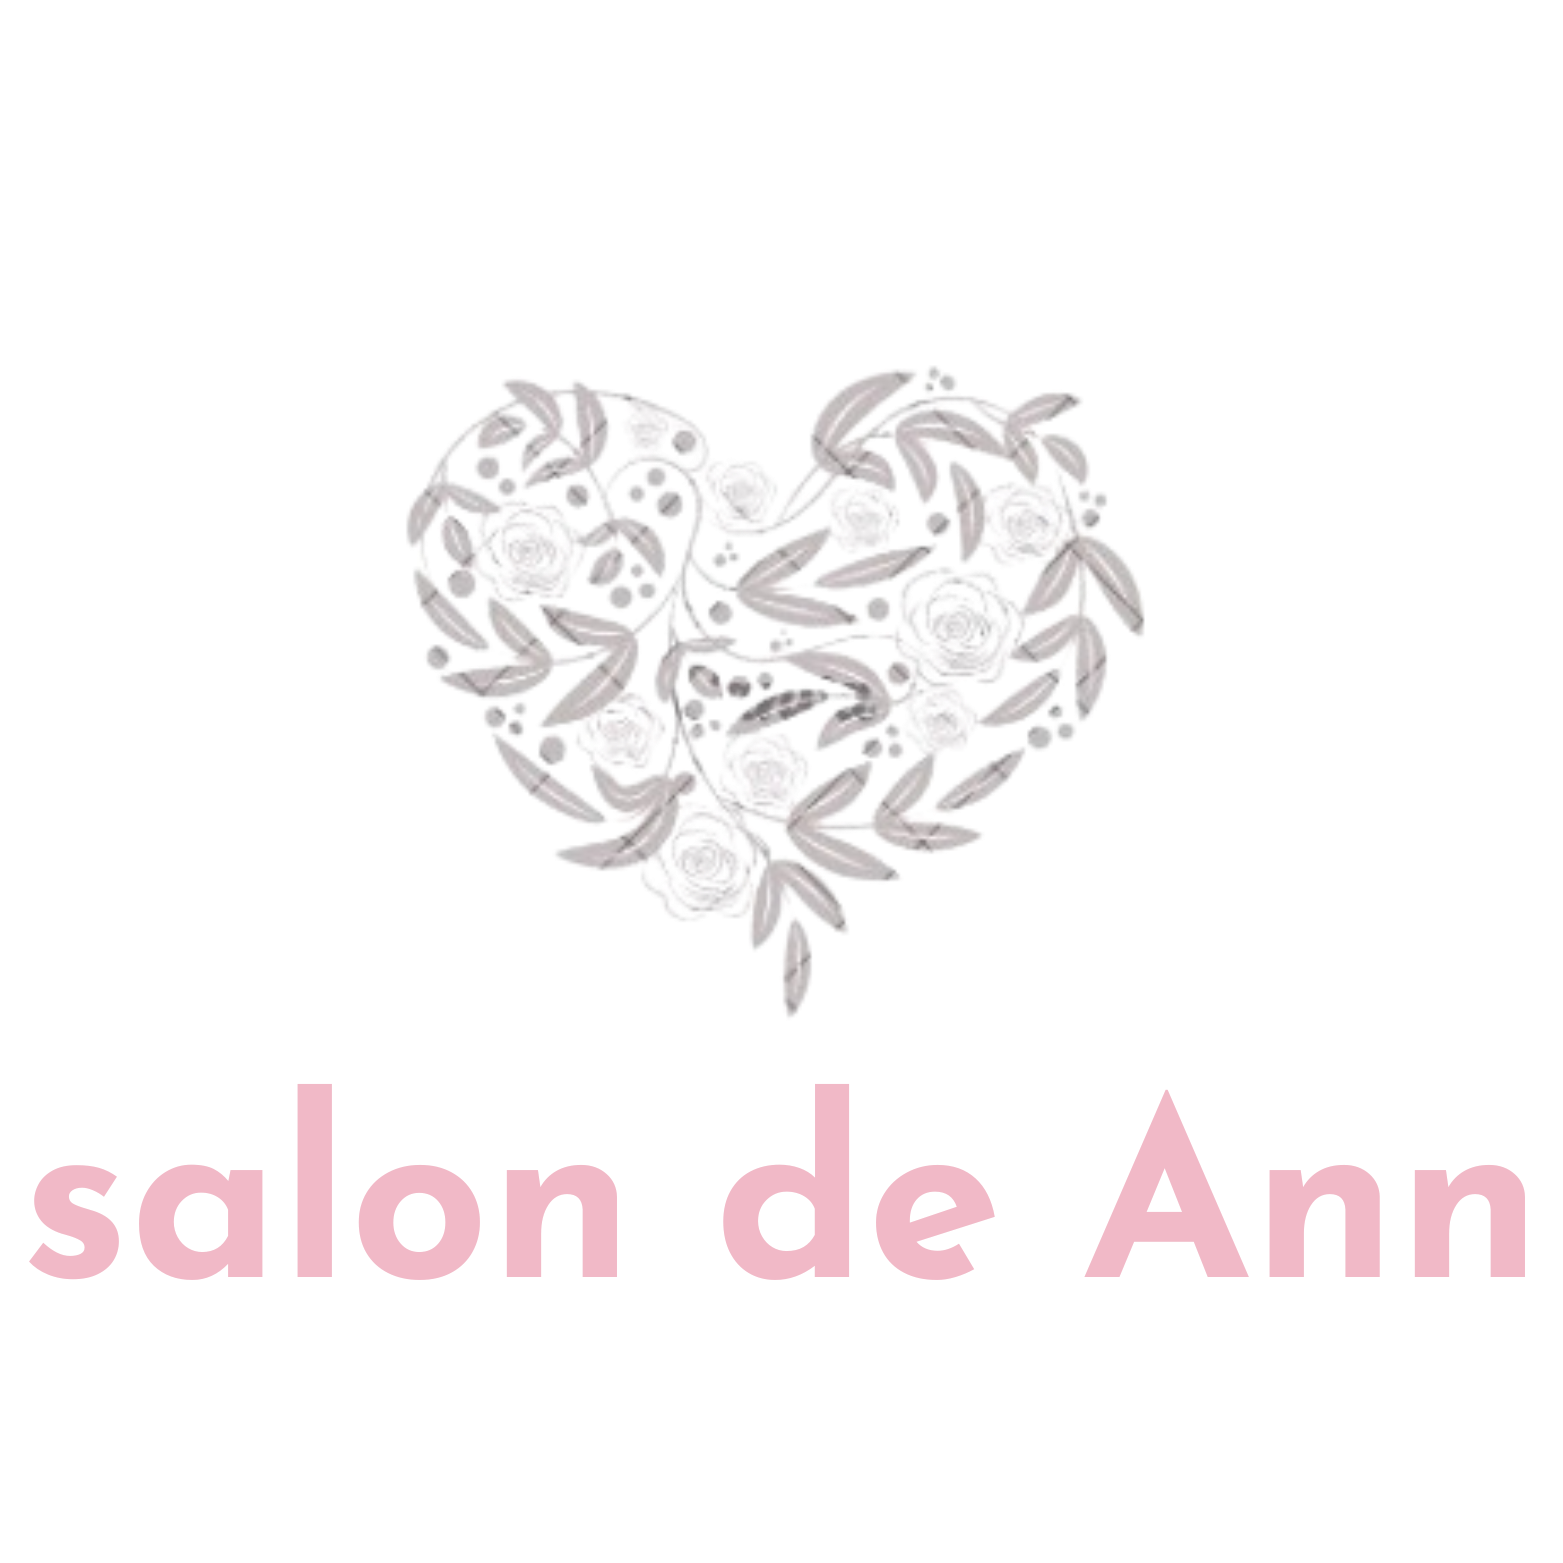 Salon de Ann